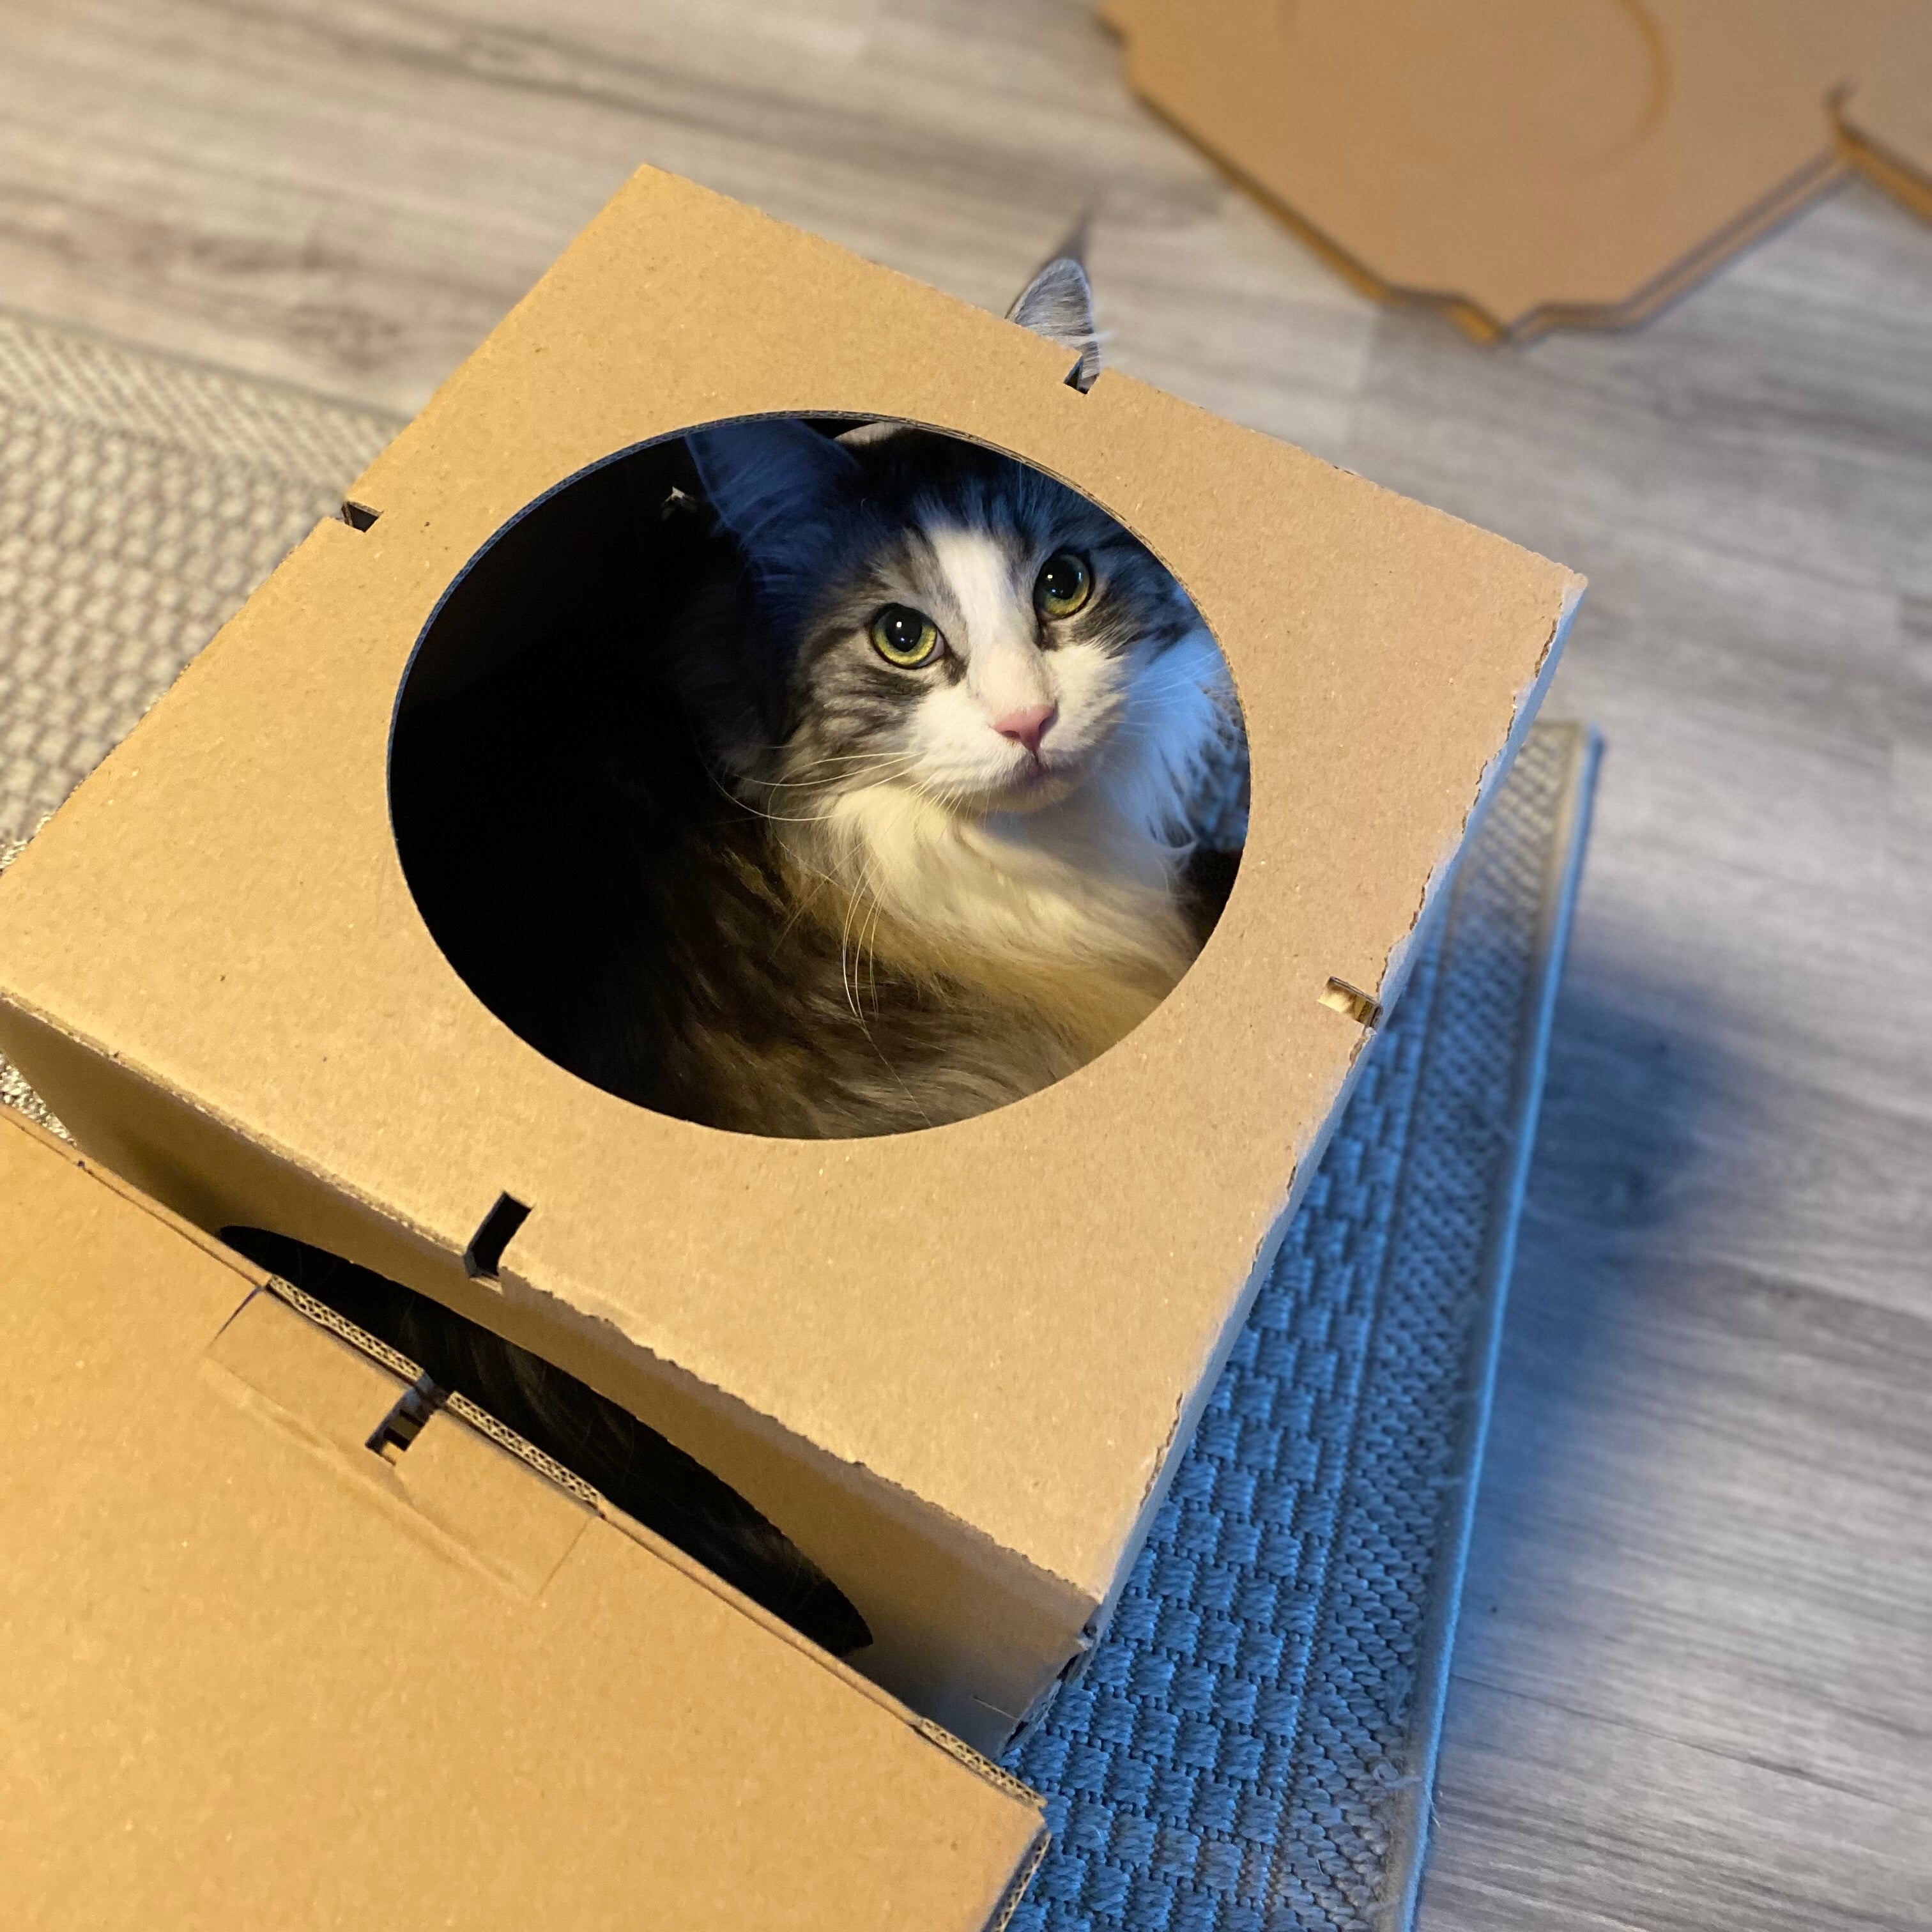 Katze sitzt in einem Kartonmodul